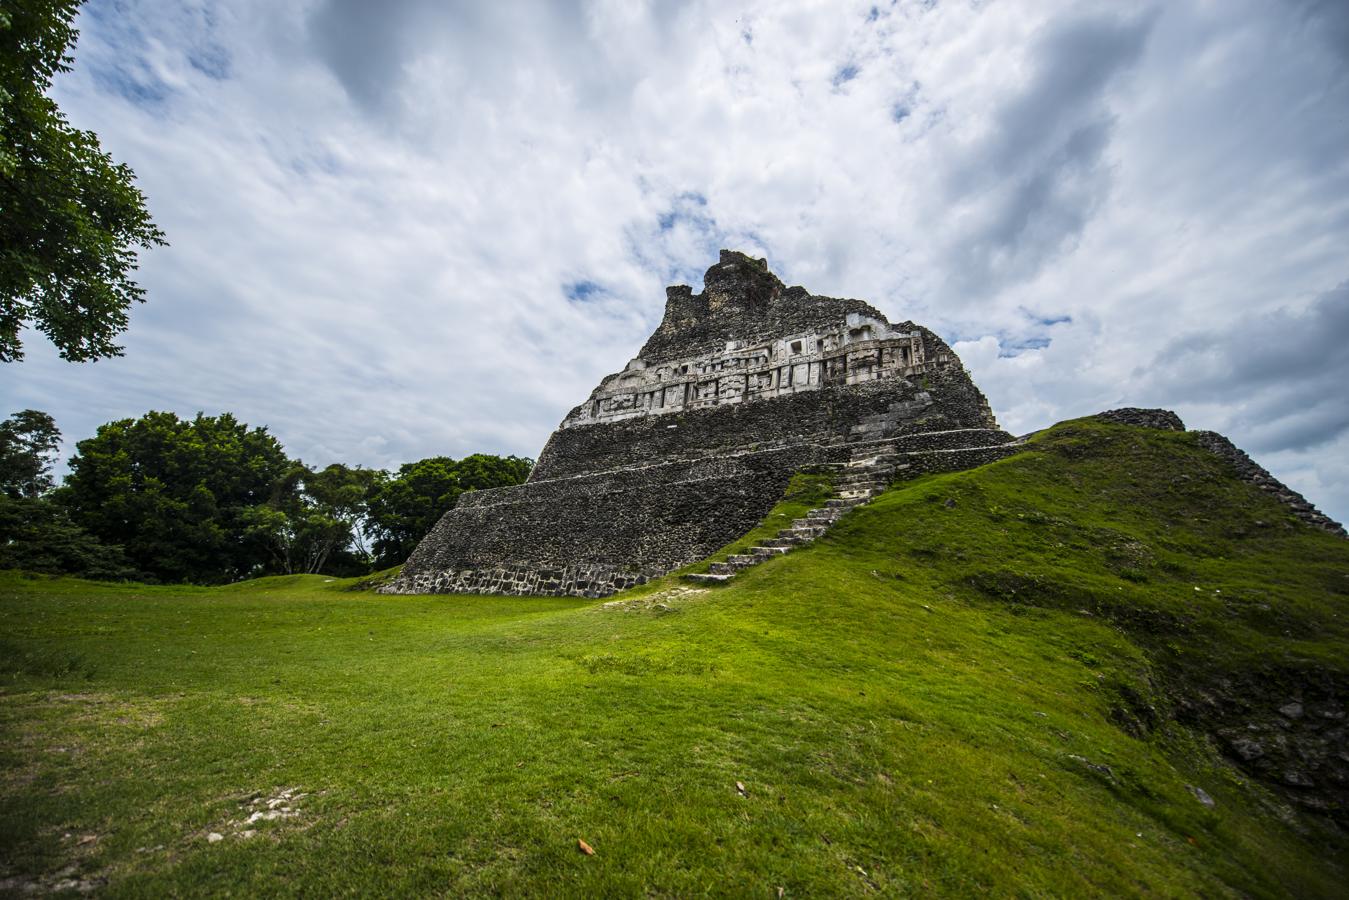 Seiscientos sitios mayas en Belice. Cuando se trata de cantidad y variedad de ruinas mayas, Belice ocupa el primer lugar y podría ser considerada como epicentro de la Cultura Maya. El país cuenta con más de 600 sitios mayas, entre los cuales pueden encontrarse Xunantunich (en la foto), Caracol, Lamanai, Cahel Pech, Altun Ha y Lubaantun. Caracol, en el distrito de Cayo, era la ciudad maya más grande de Belice y uno de los aspectos más destacados es Cana, una pirámide de 42 metros de altura.